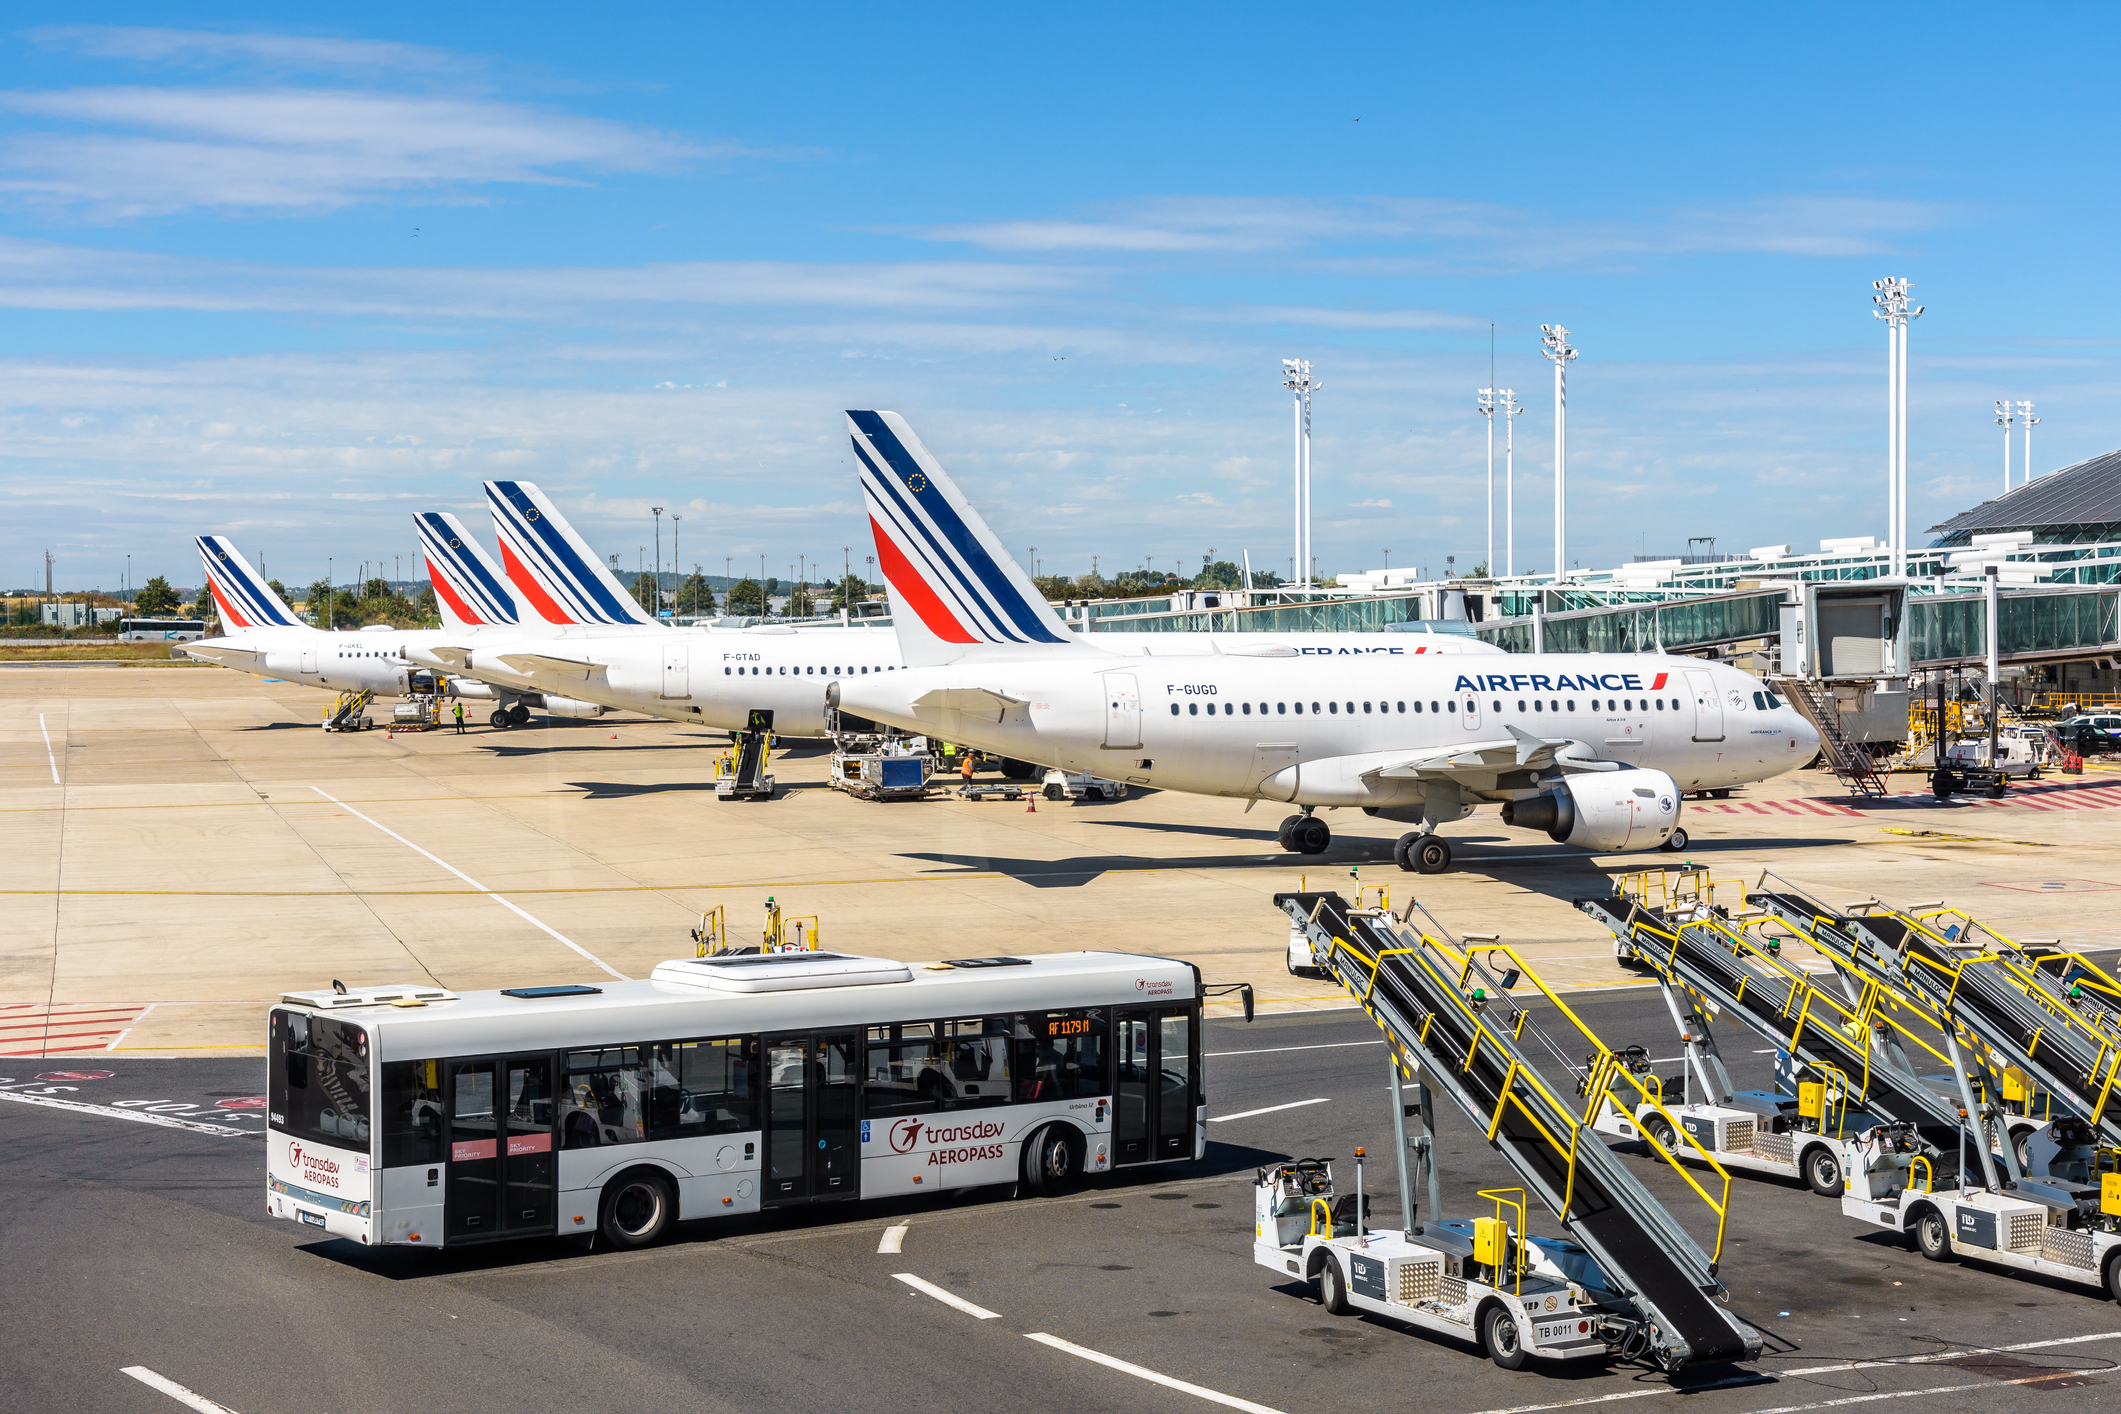 Eine Reihe von Air France Flugzeugen steht in Parkposition nebeneinander, im Vordergrund bringt ein Bus Passagiere zu den Maschinen.